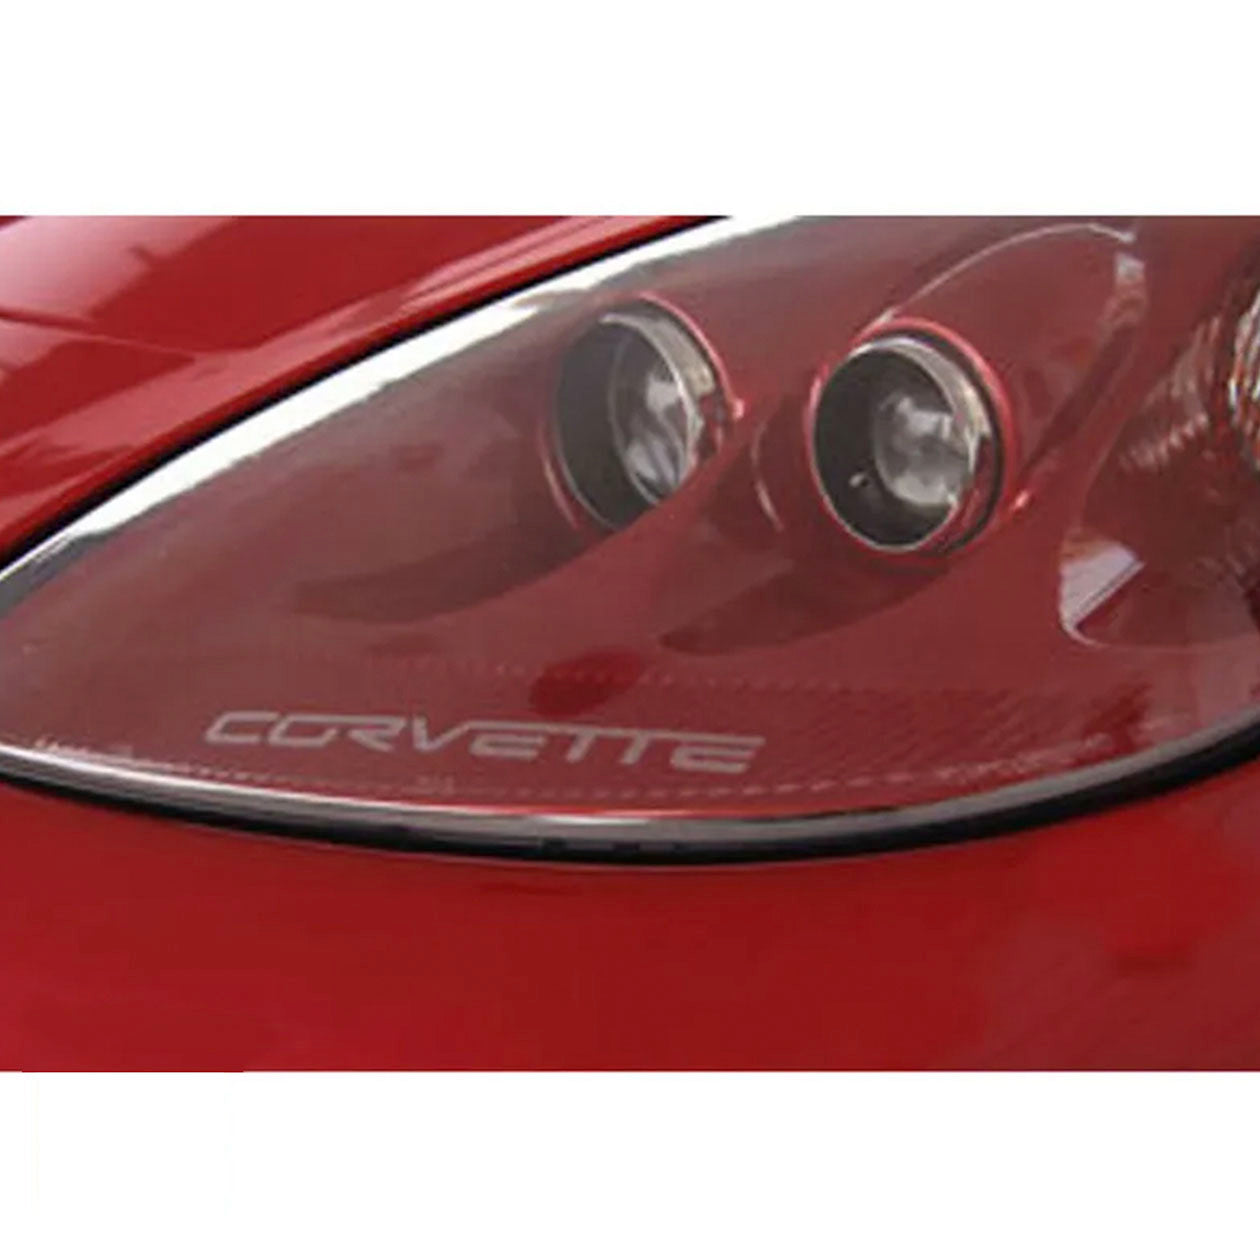 C6 Corvette Headlight Vinyl Decals - Corvette Script